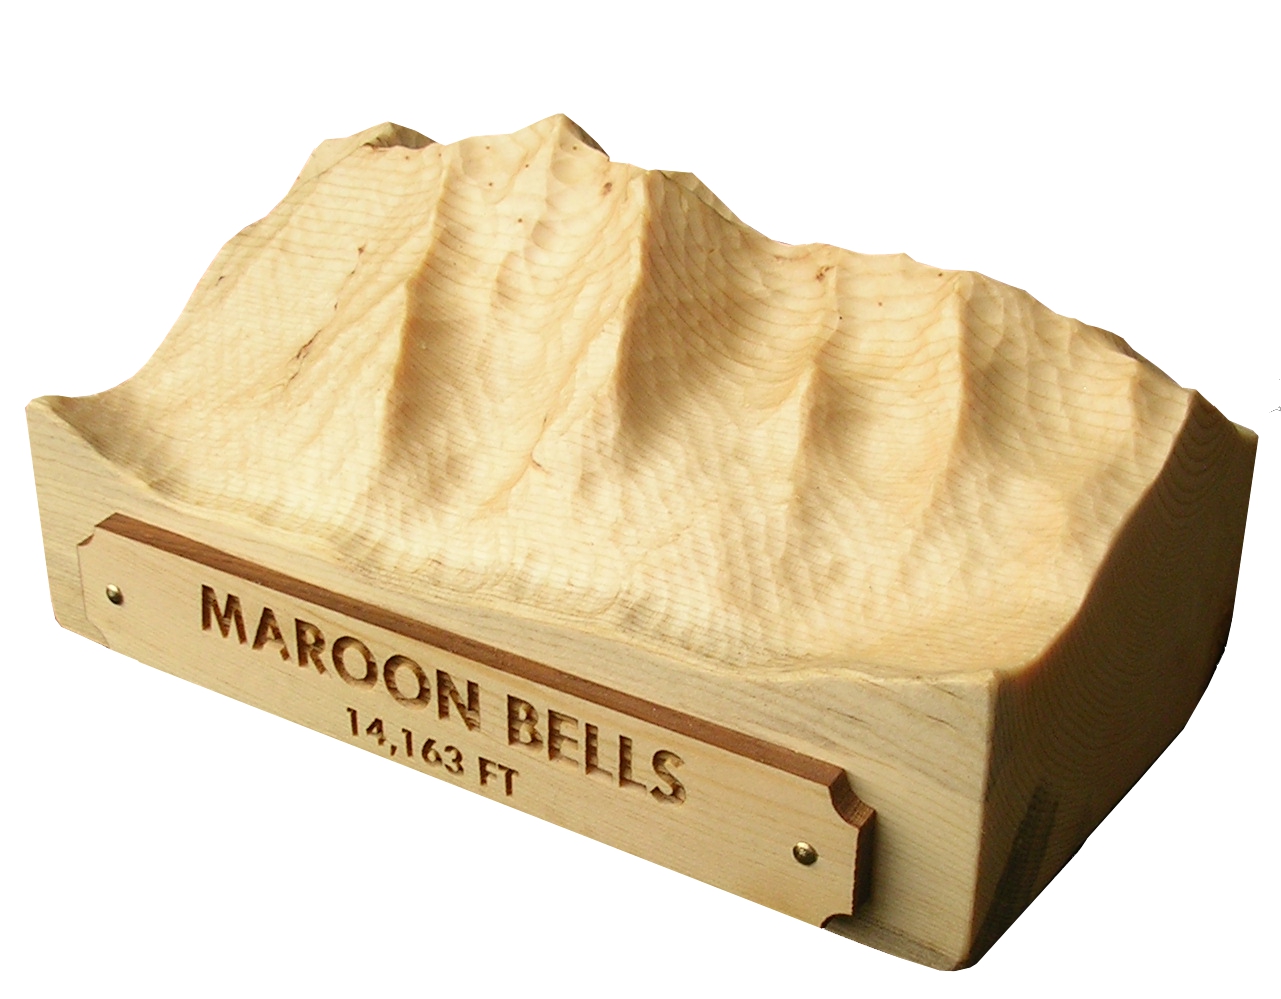 Maroon-Bells-Carving-Gift.jpg